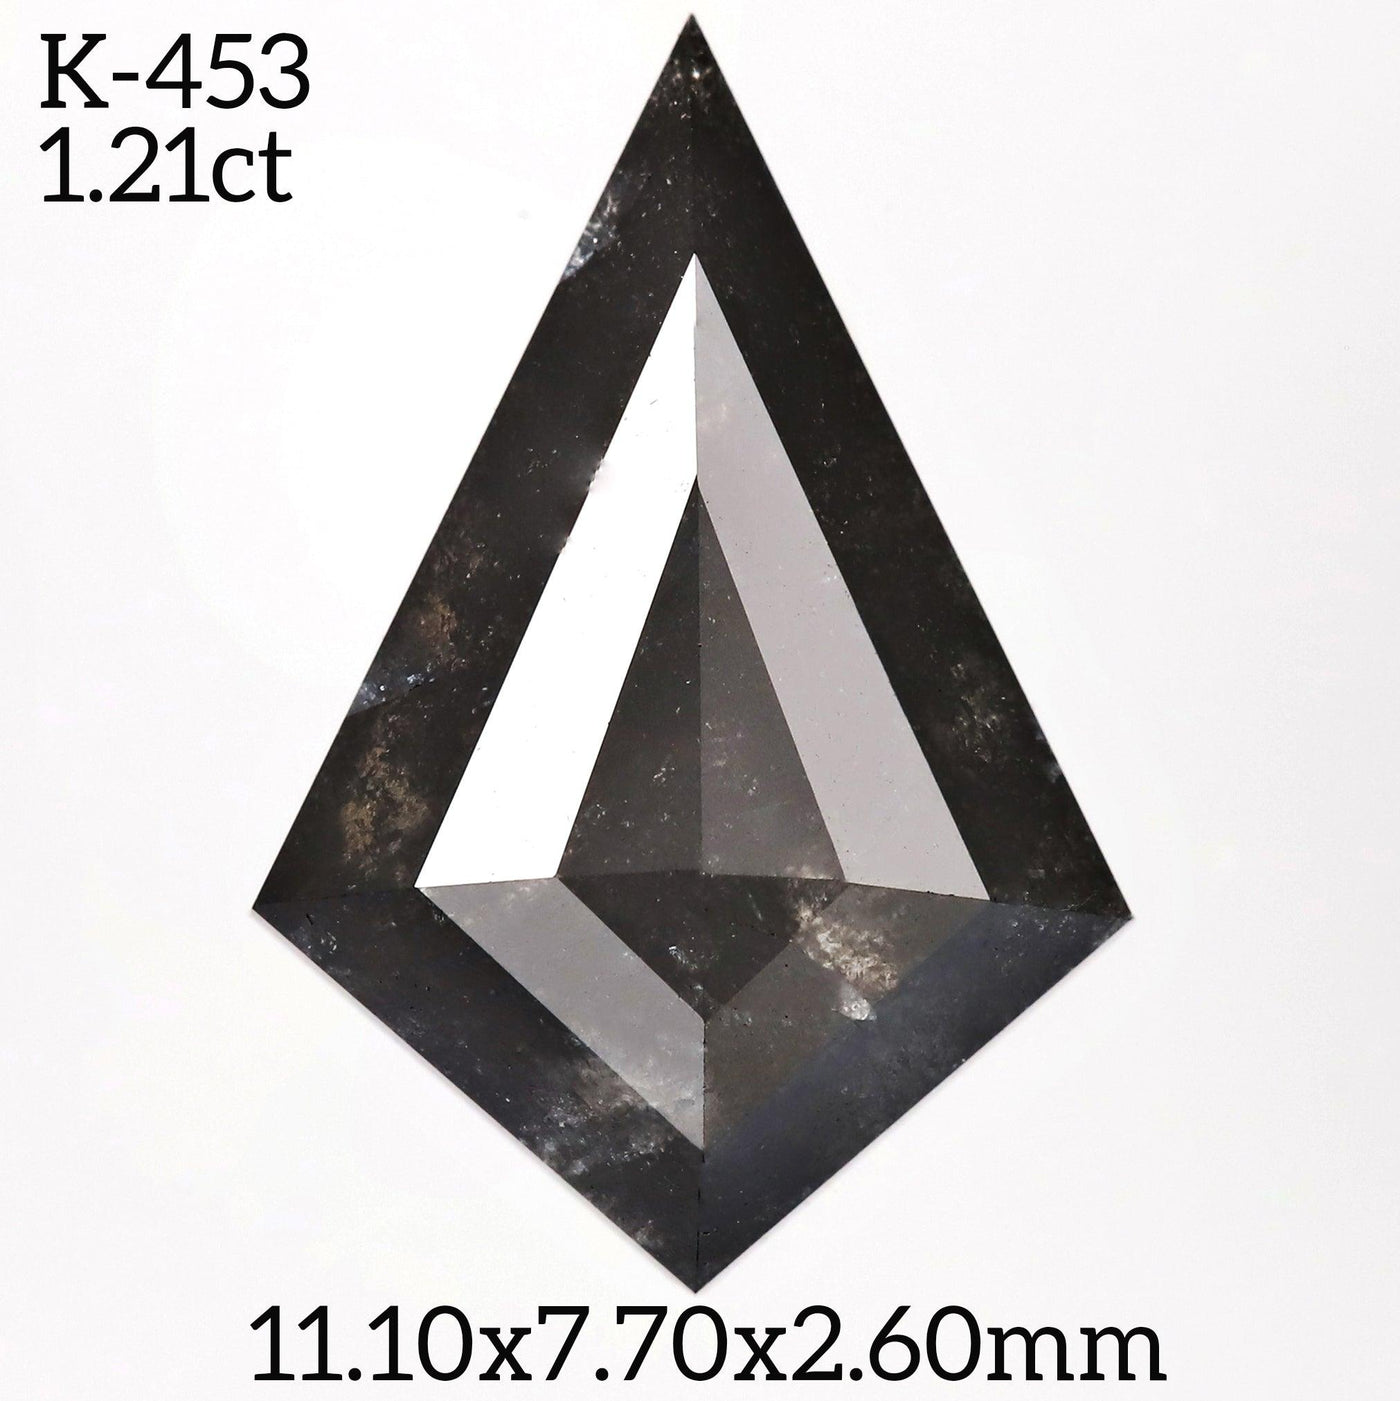 K453 - Salt and pepper kite diamond